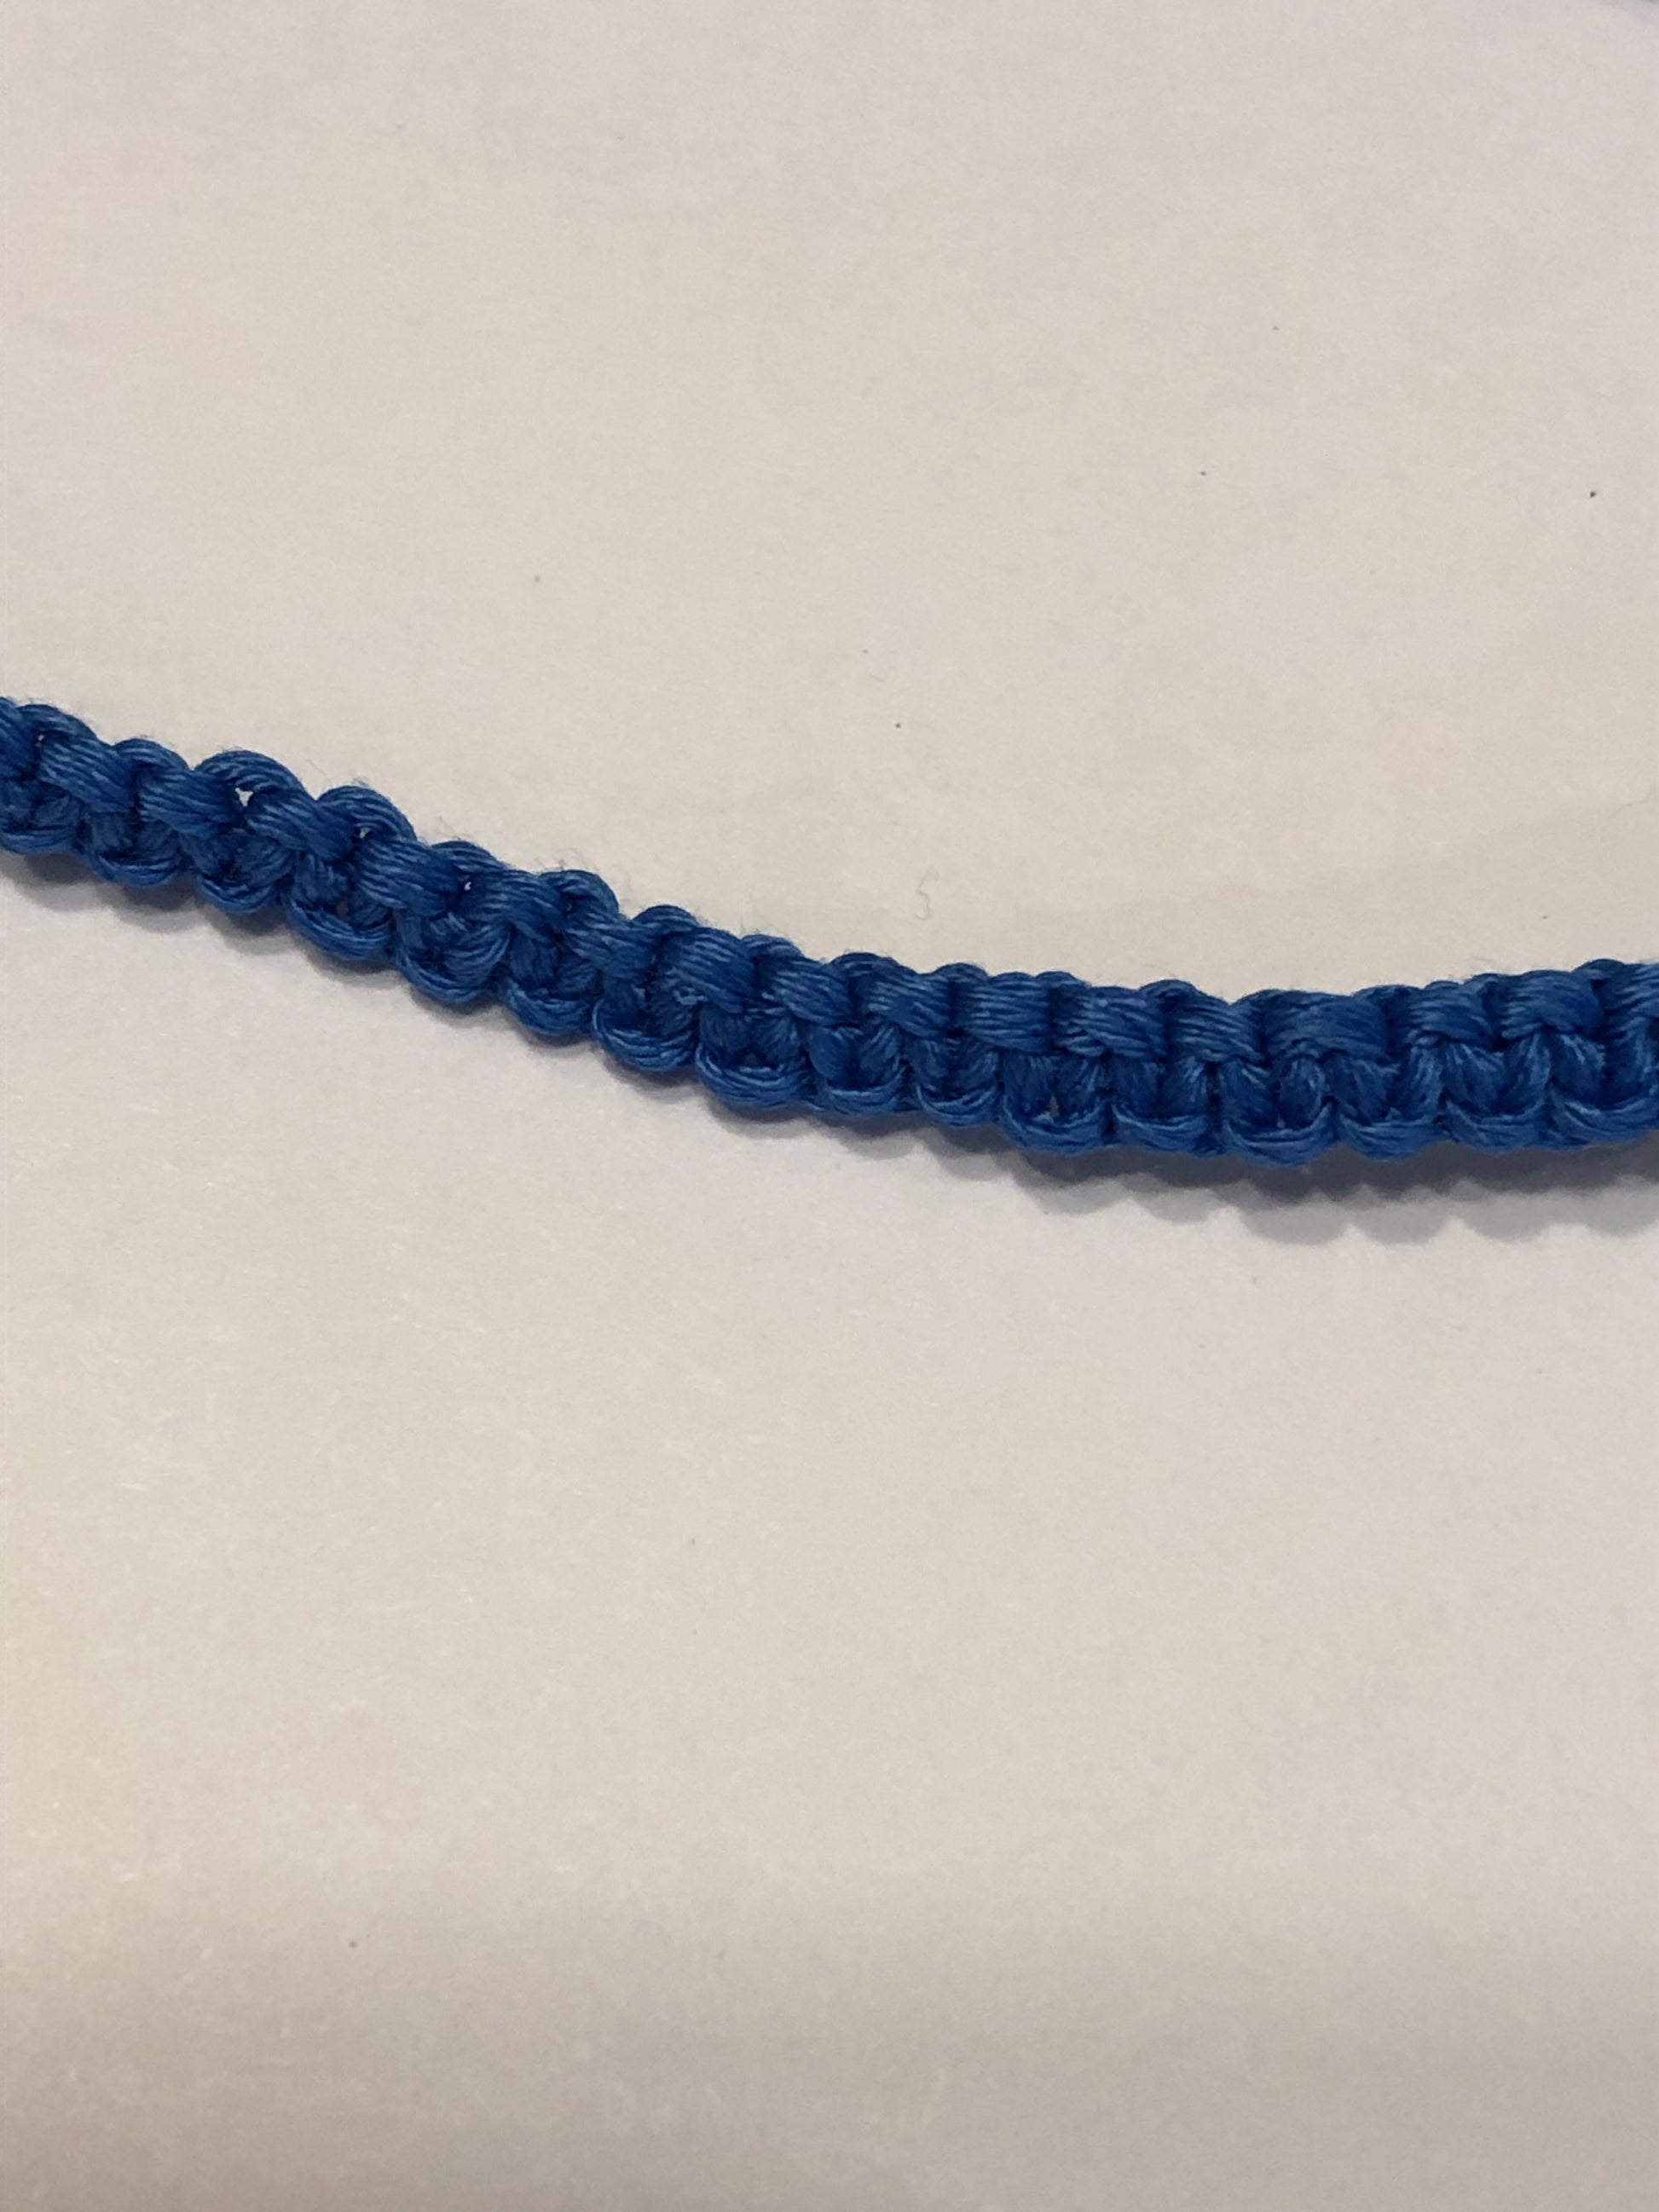 Crochet Cord Bracelet - How To 